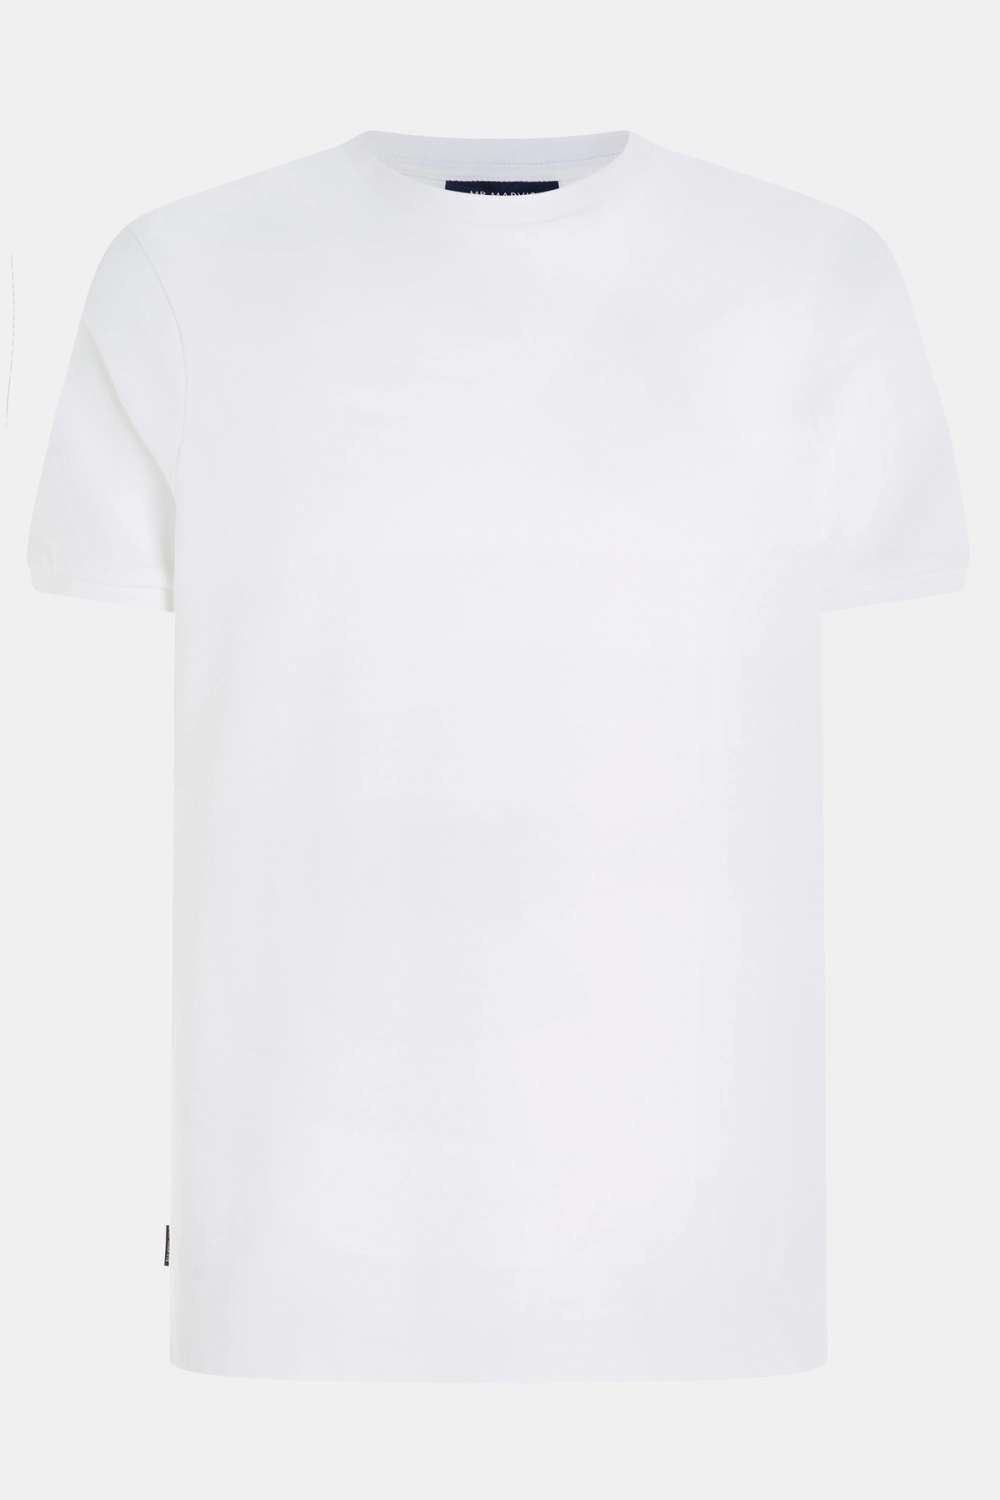 Wimbledons - T-shirt Piqué